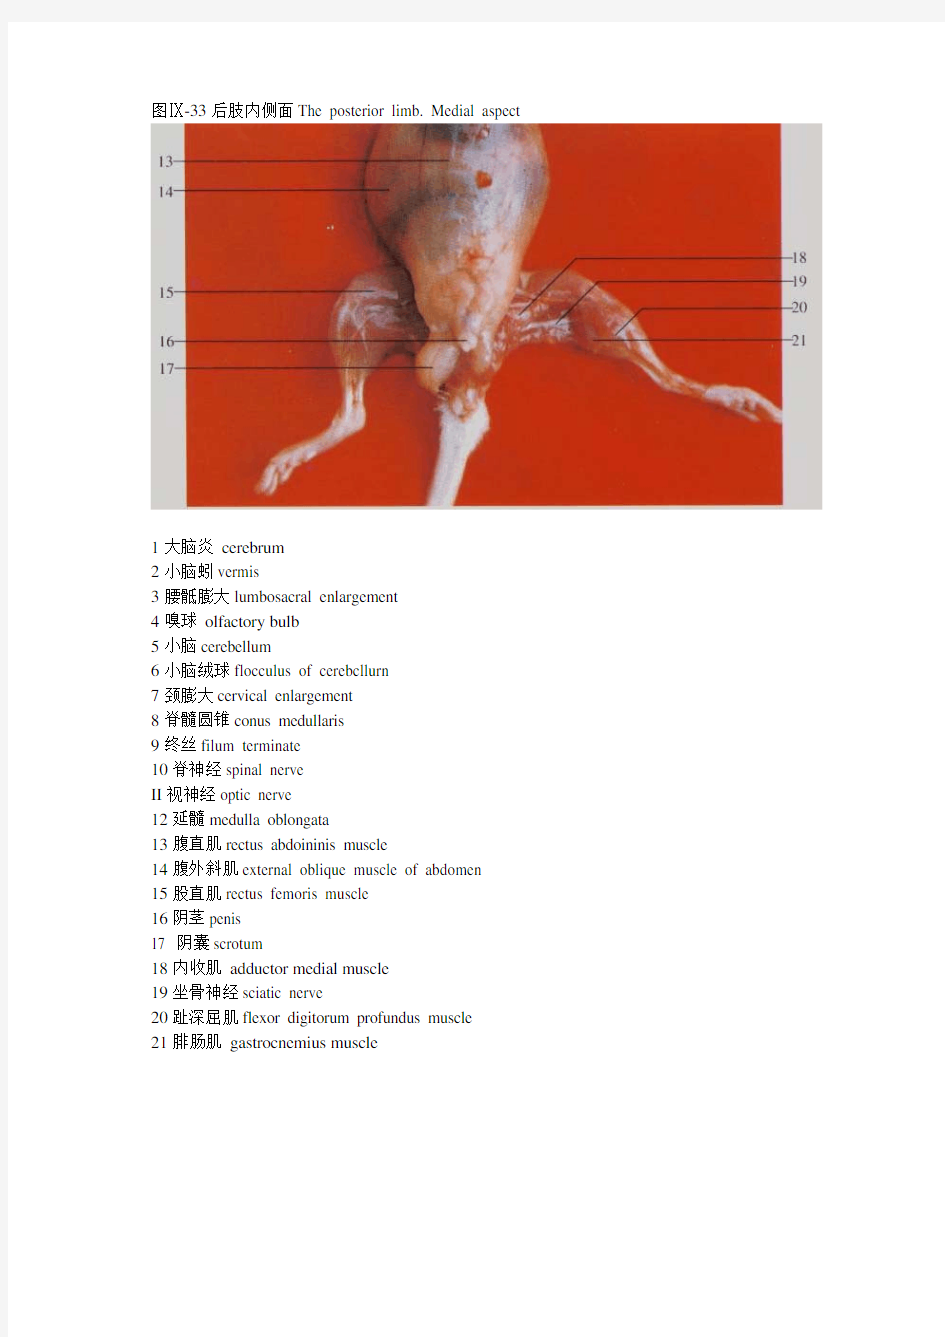 小鼠解剖图-神经器官、后肢